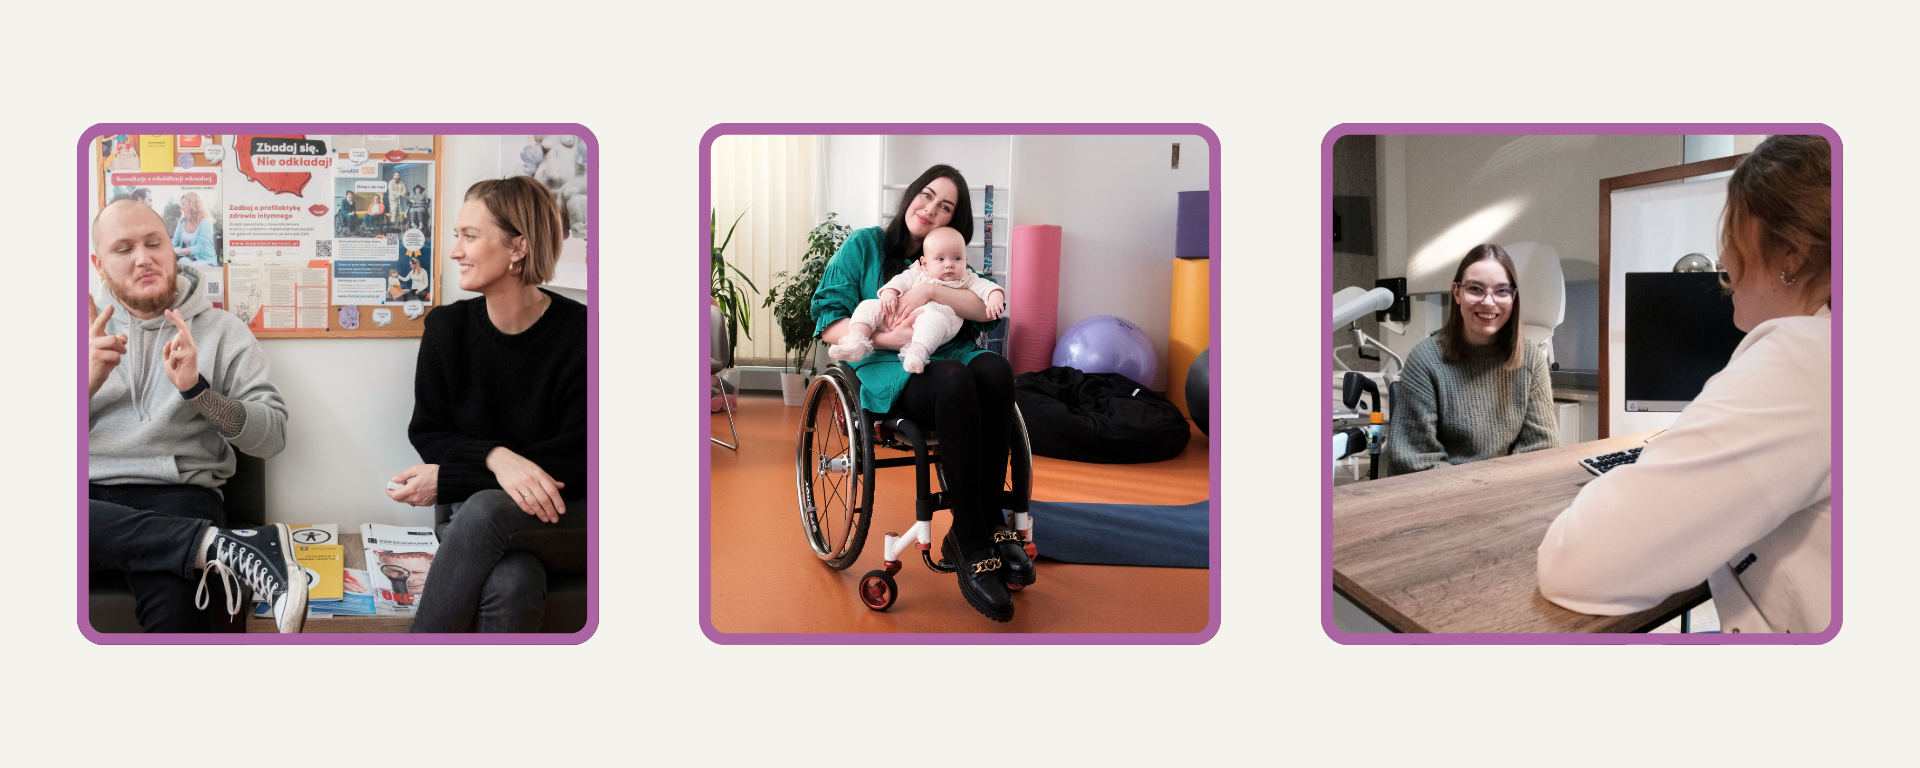 Grafika z kolażem 3 zdjęć z kampanii - na jednym głuchy mężczyzna z partnerką w poczekalni, na drugim mama na wózku z niemowlęciem, na trzecim dwudziestoletnia dziewczyna na wózku w gabinecie ginekologicznym.